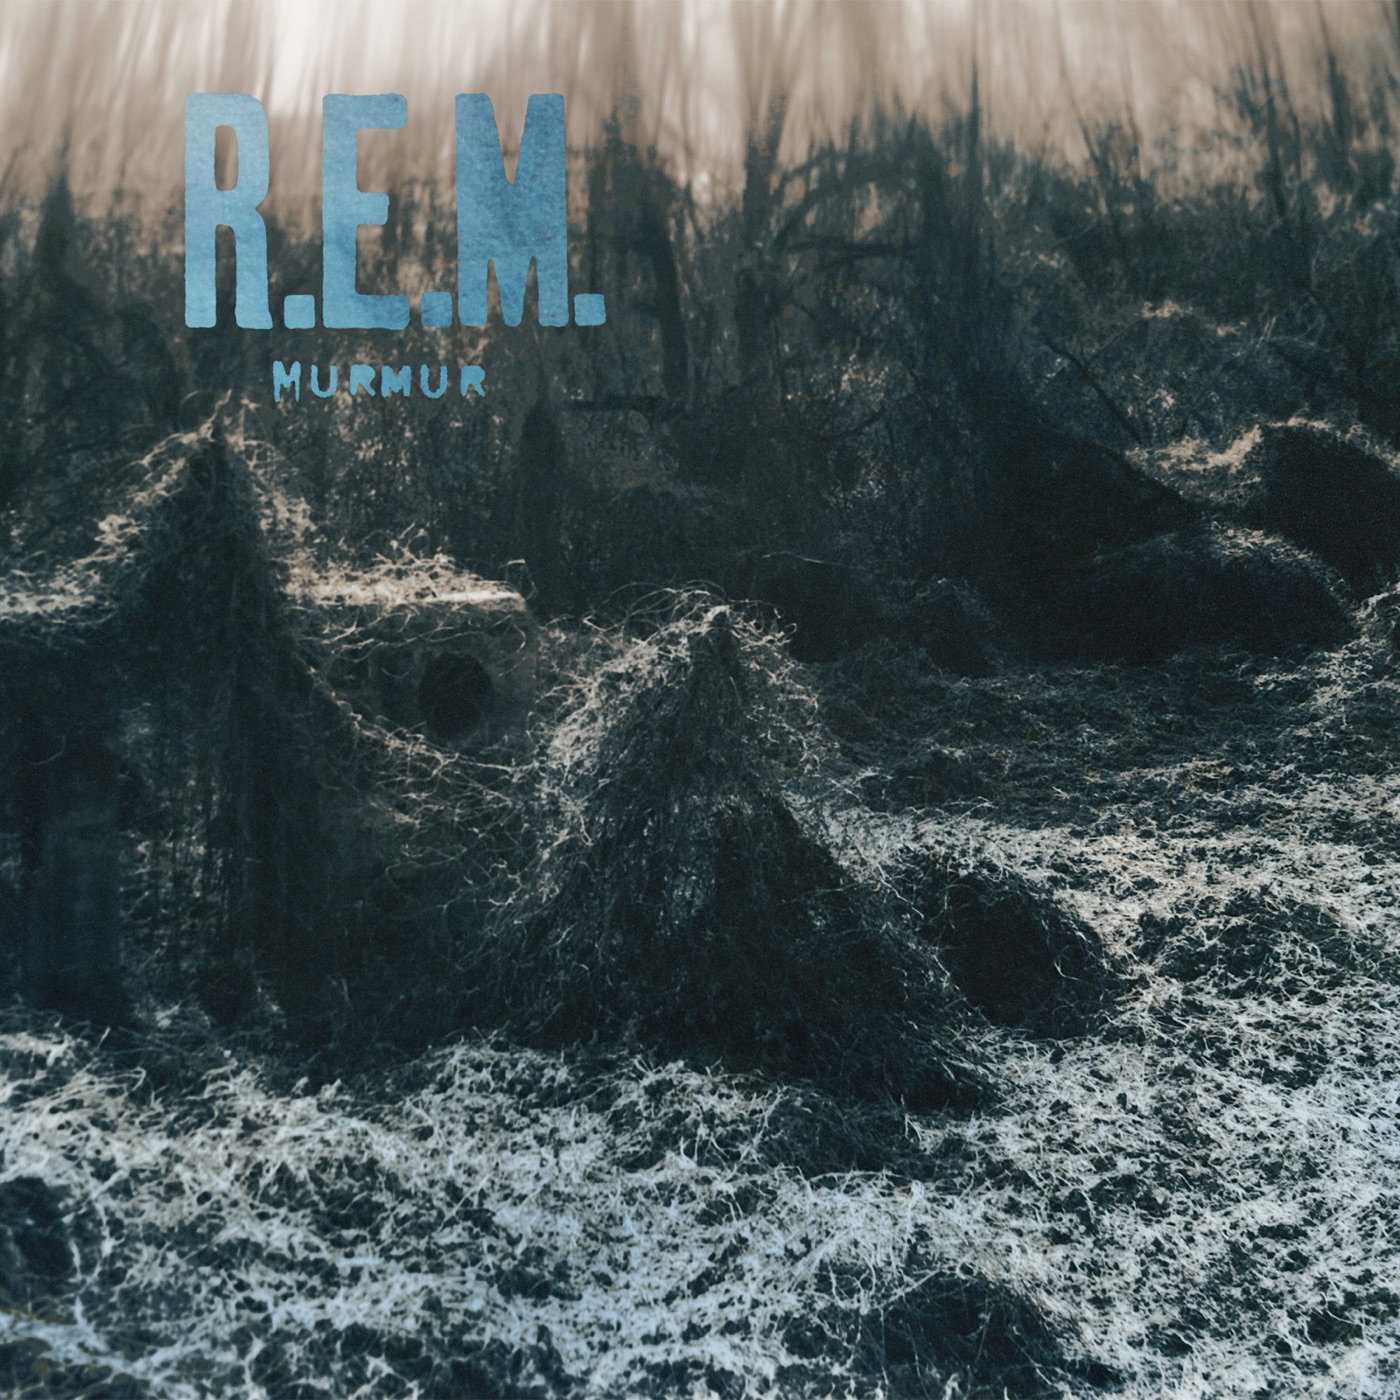 Radio Free Europe by R.E.M.